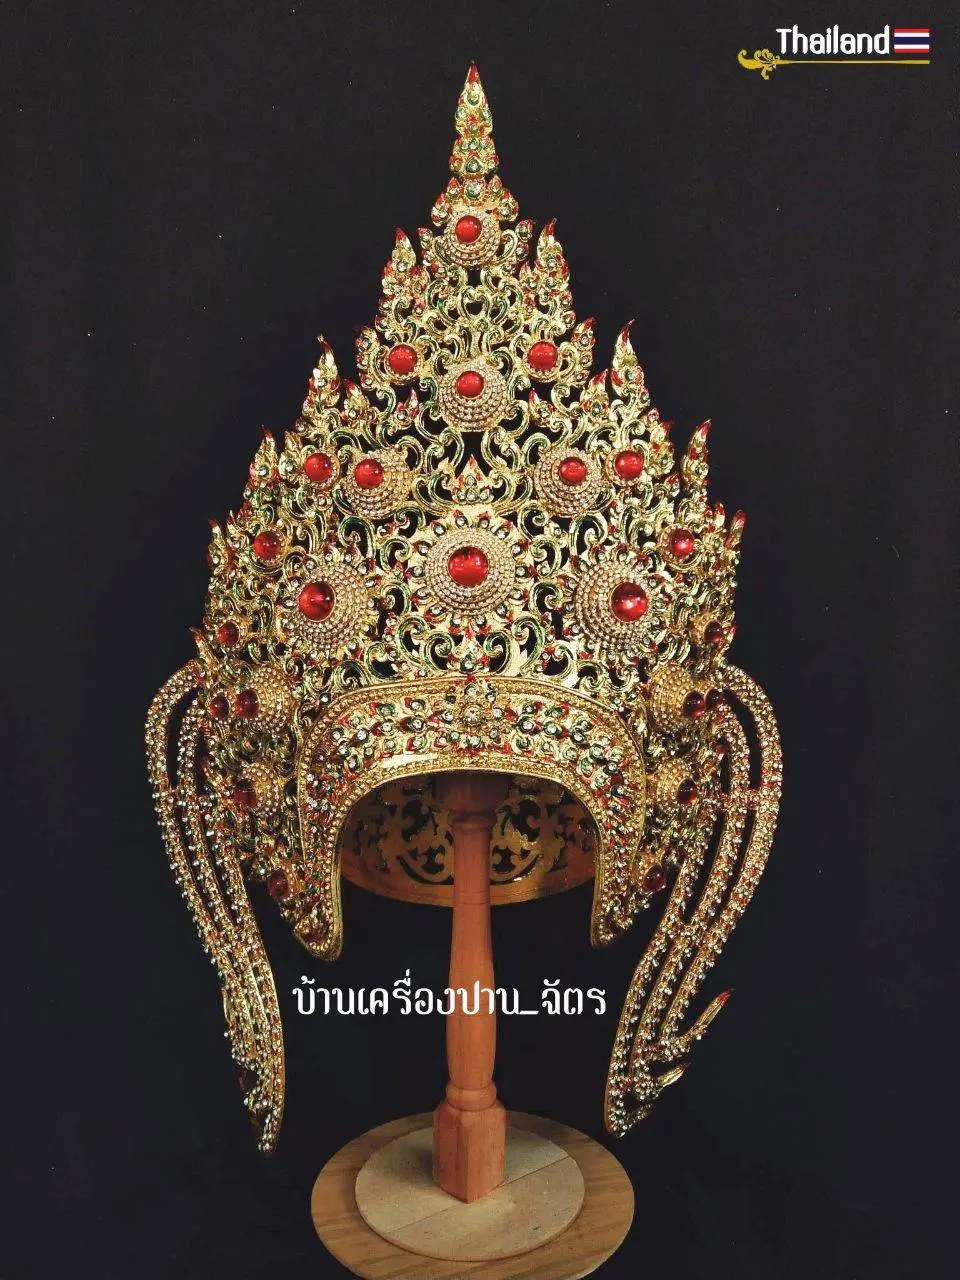 THAILAND 🇹🇭 | Thai Apsara Crown